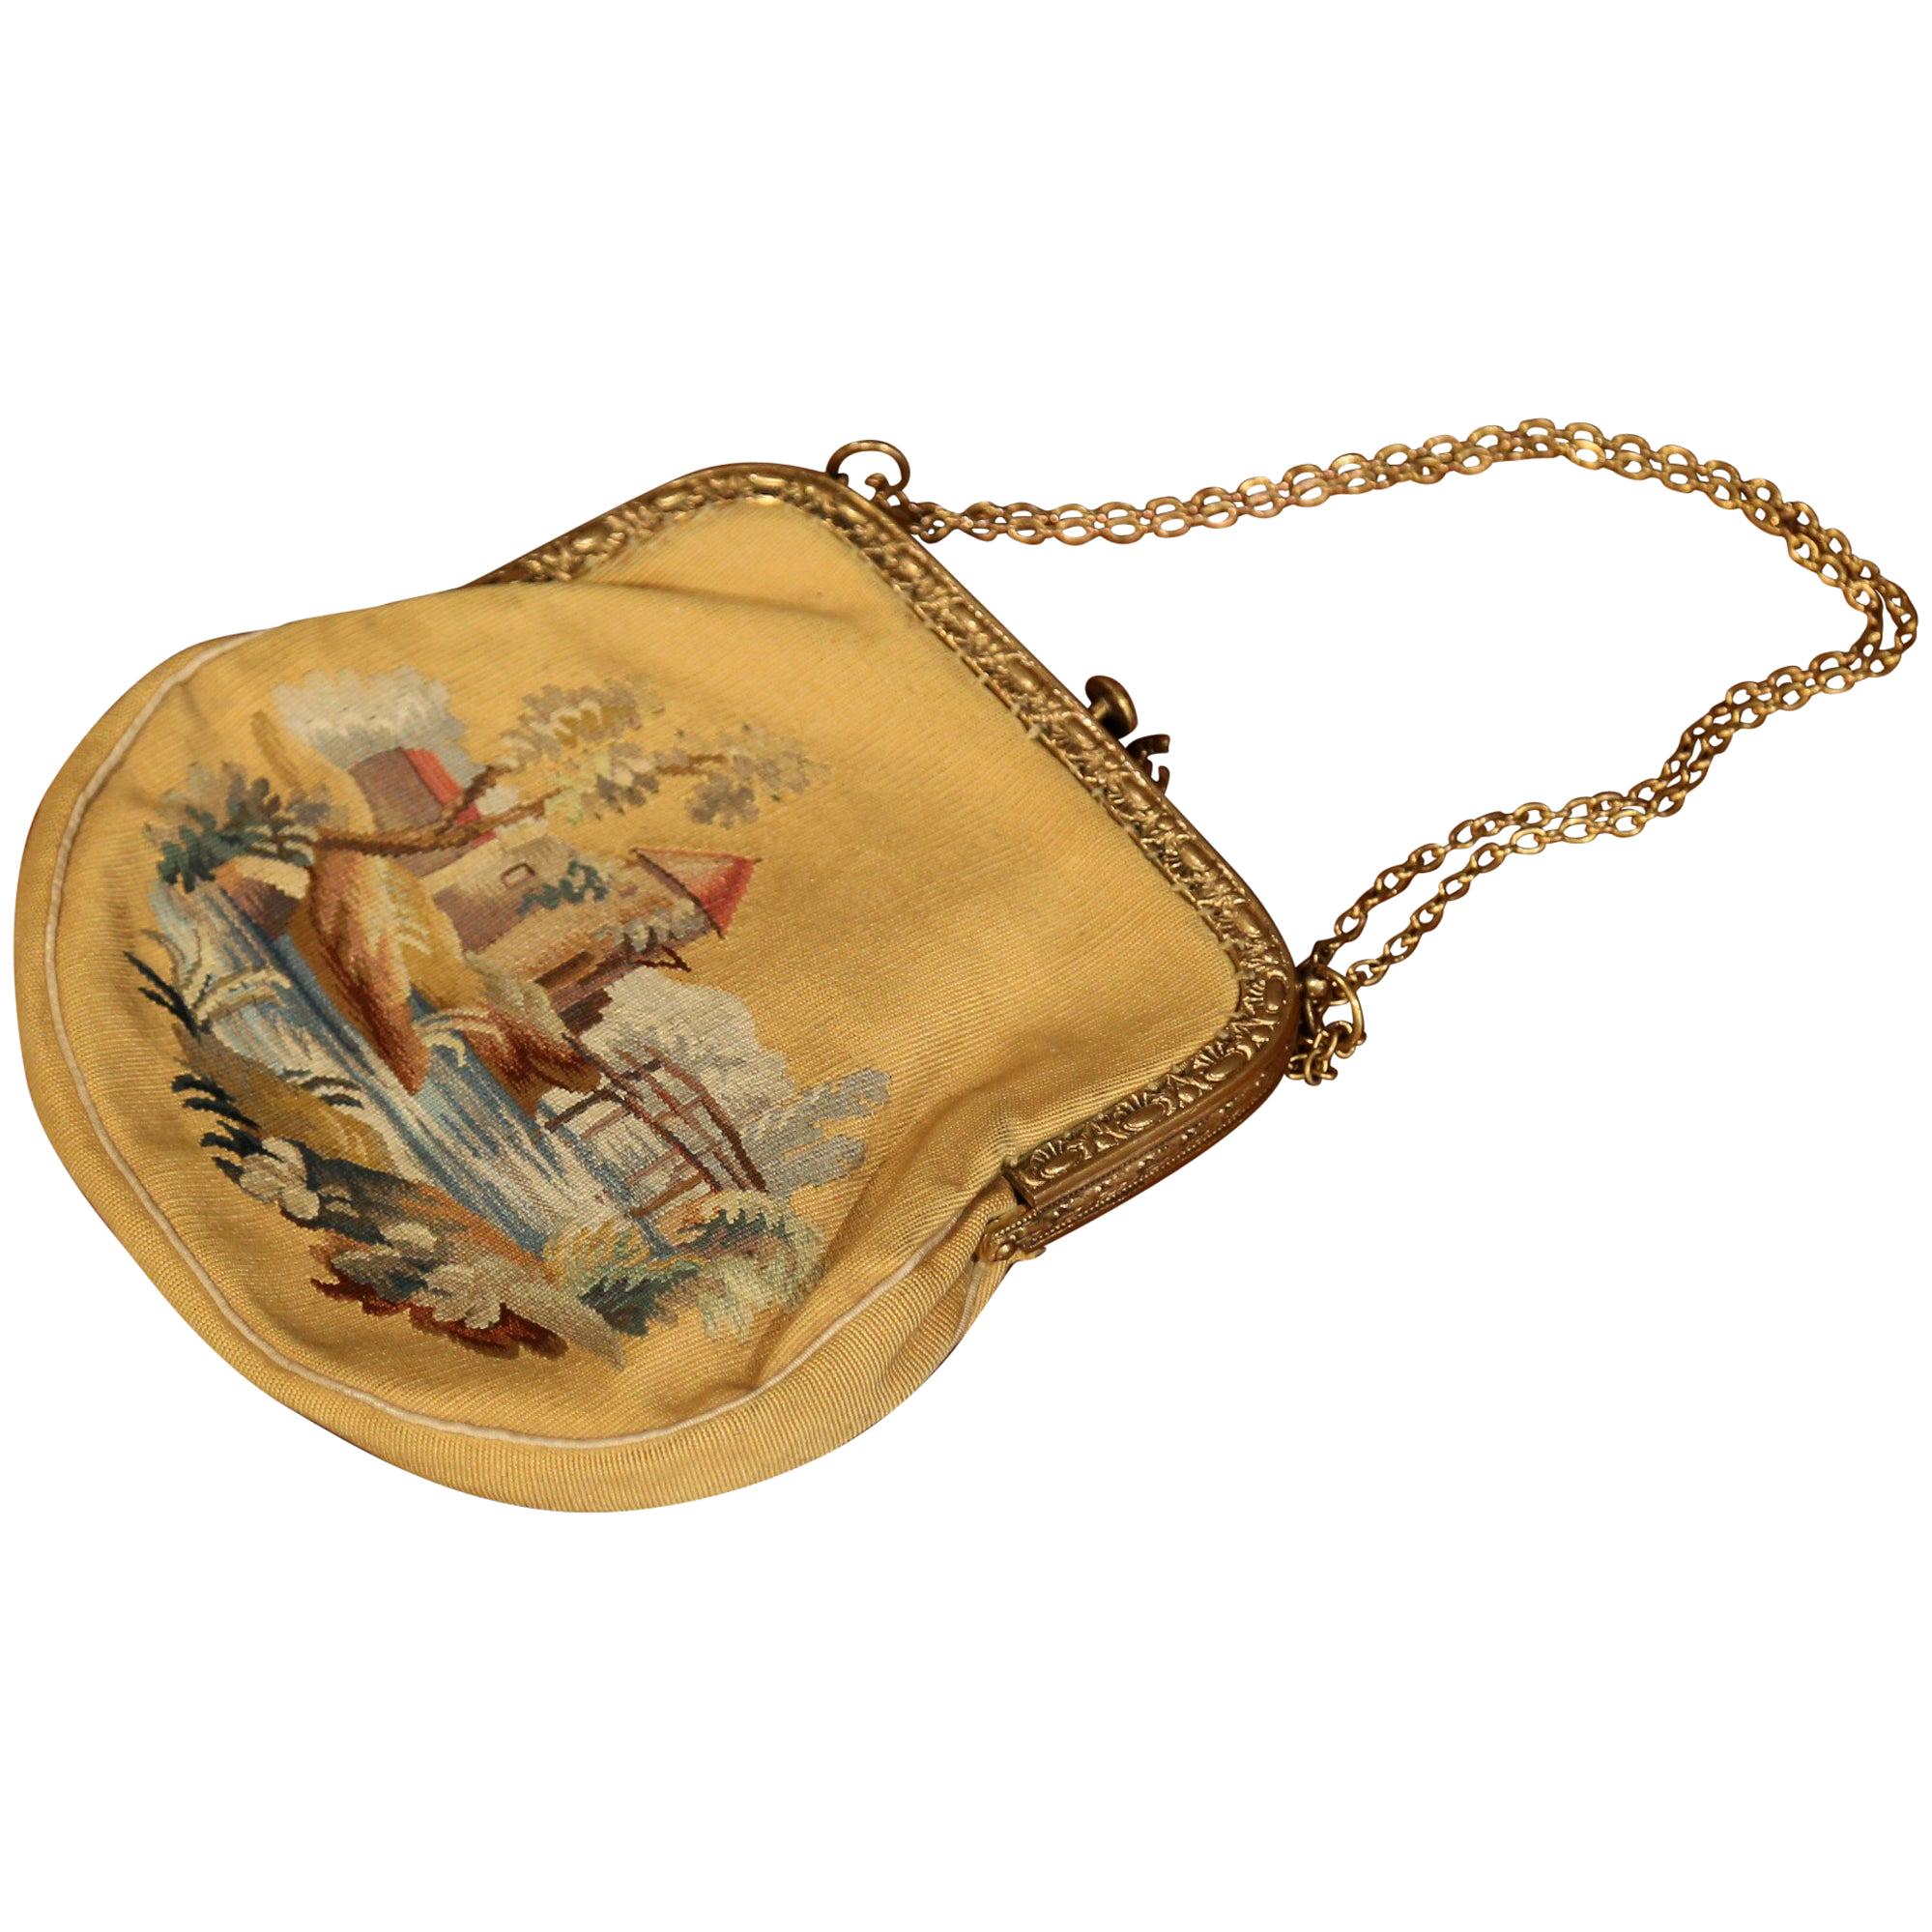 Französische Louis XVI-Aubusson-Damenhandtasche des 19. Jahrhunderts mit Messingriemen und Schloss